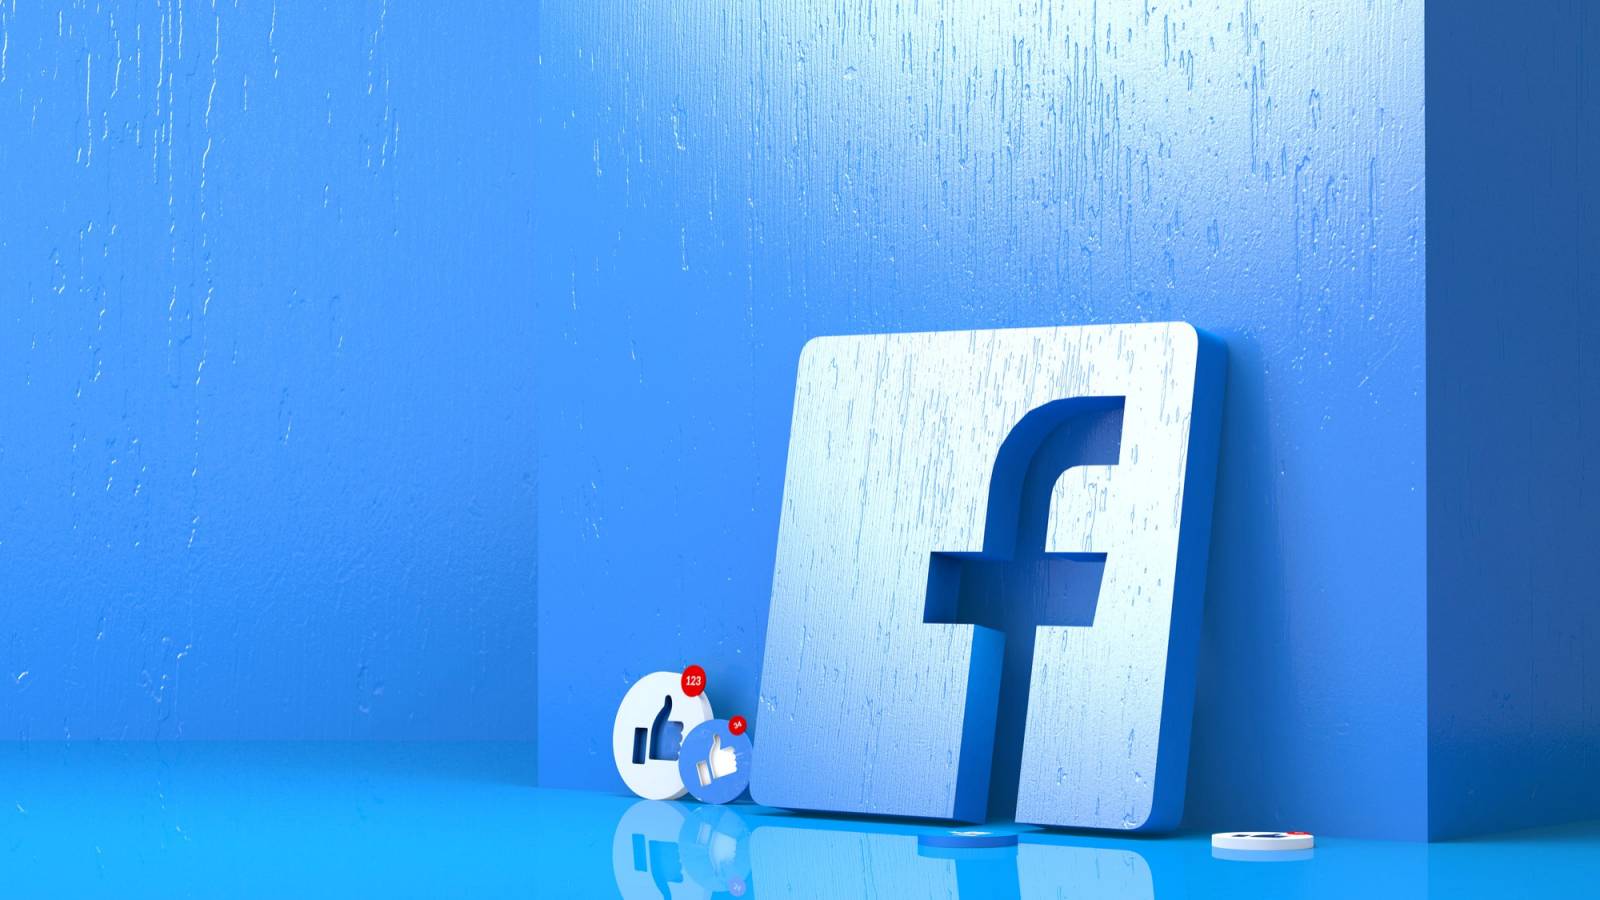 Facebook ekstremt farligt problem påvirker stort antal mennesker